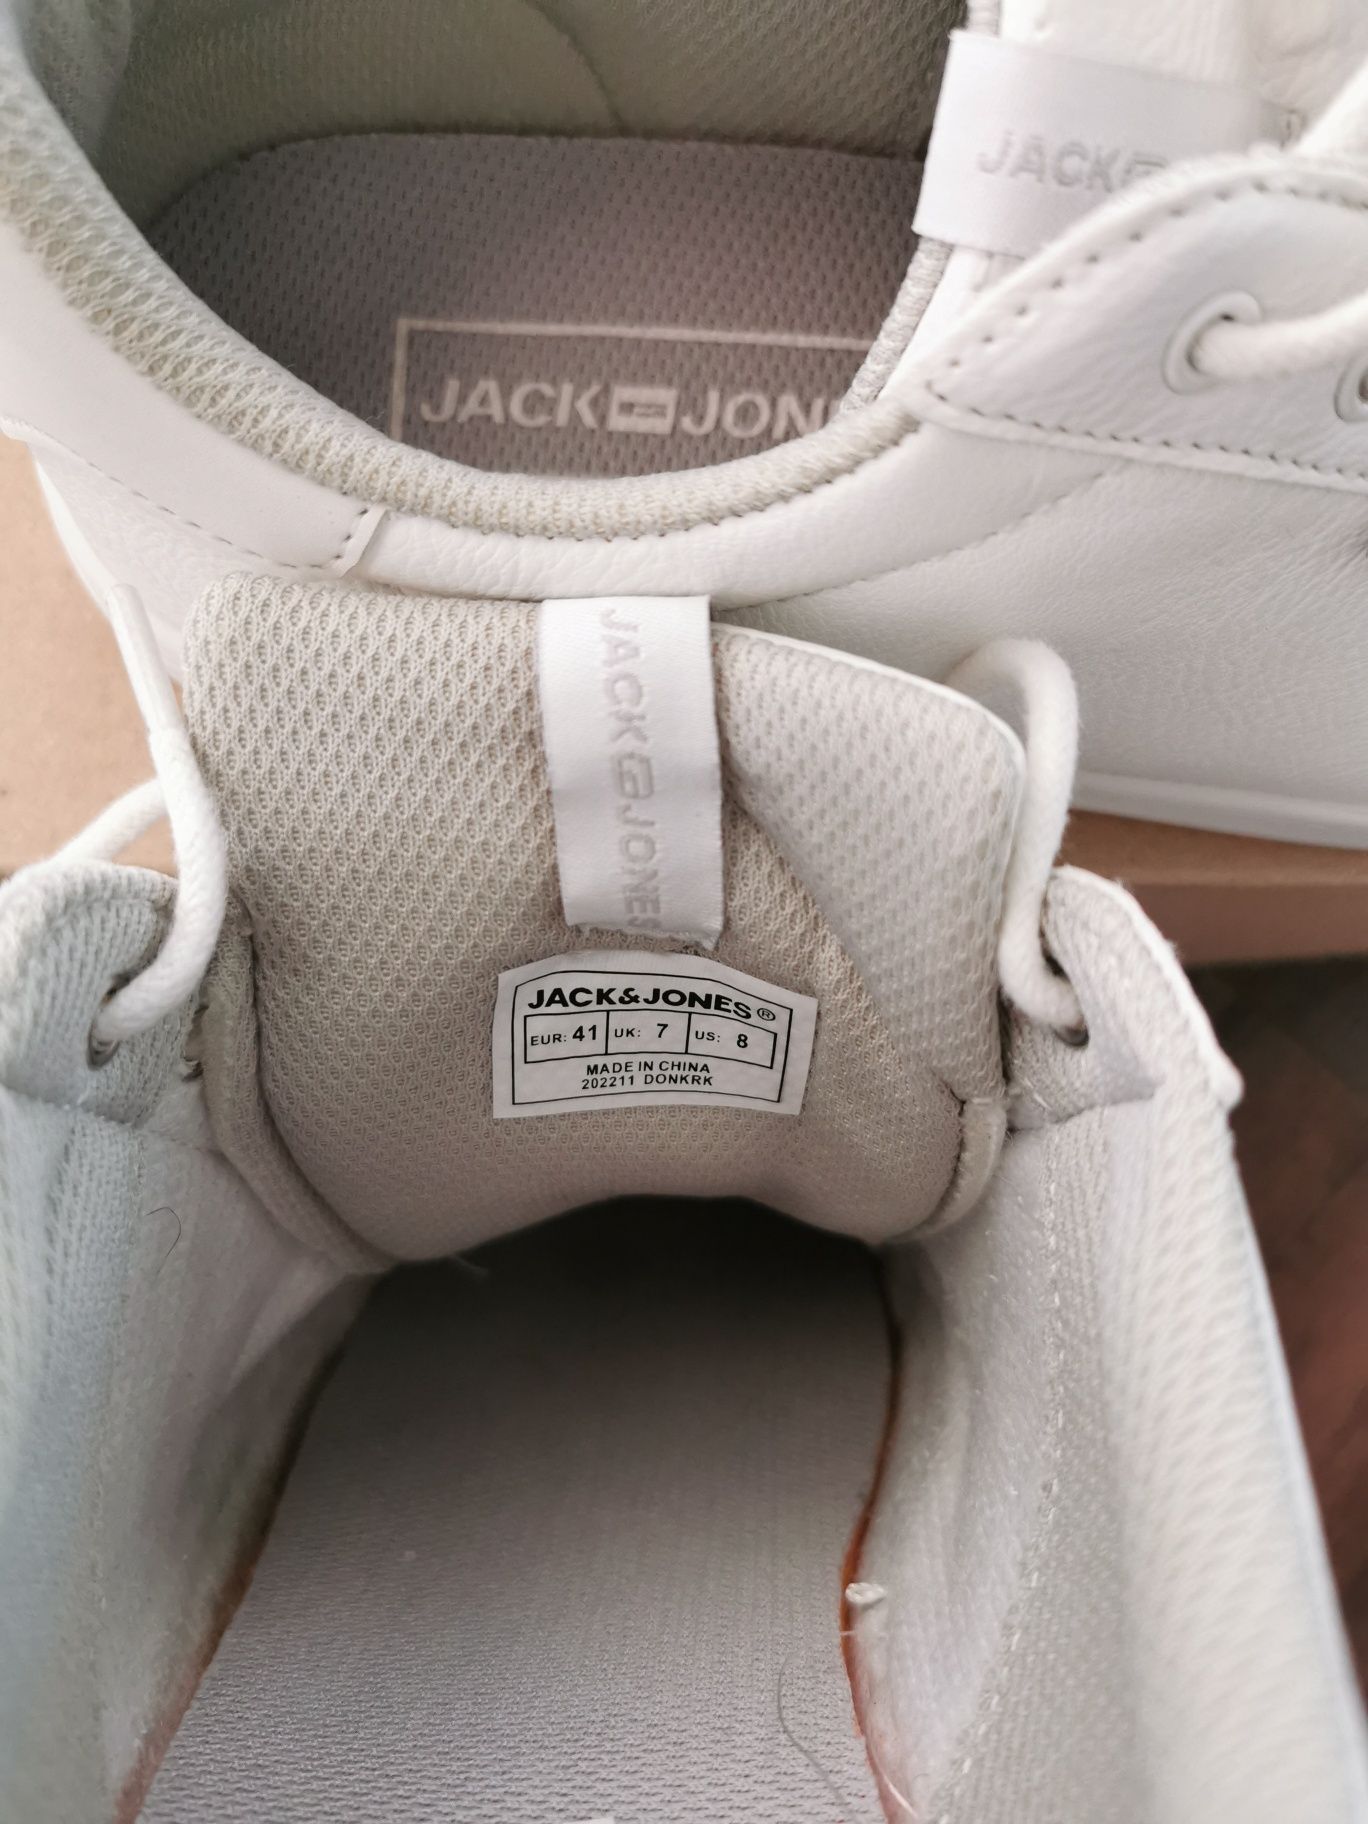 Pantofi sport/ sneakers bărbați, Jack & Jones, alb, mărimea 41